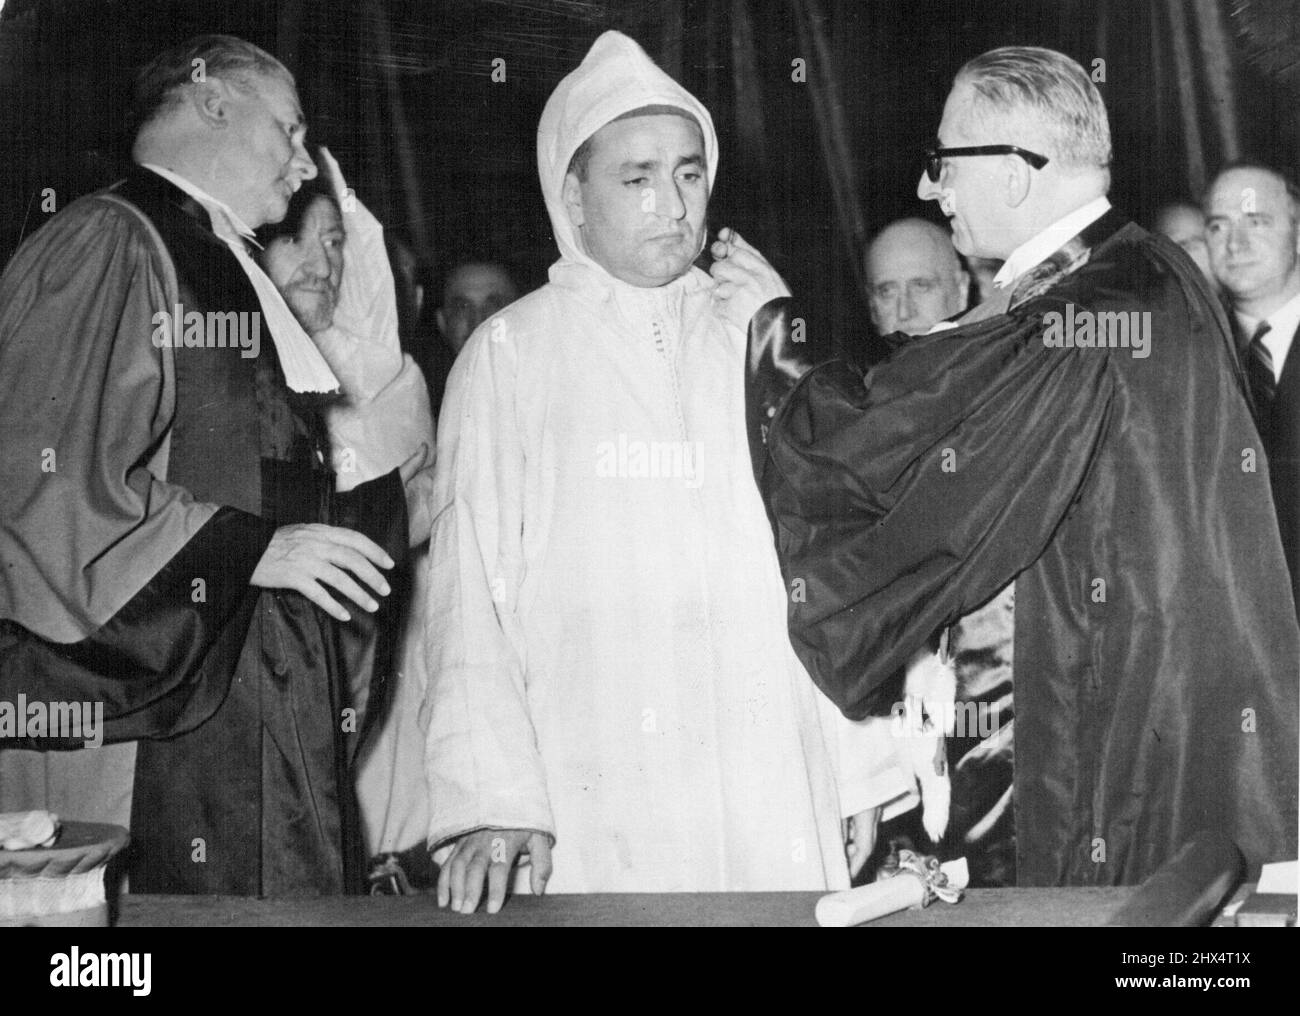 Bordeaux Honors Sultan du Maroc : le sultan du Maroc, actuellement en visite officielle en France, reçoit la liberté de la ville de Bordeaux, avant de partir pour une réception officielle à Paris. 11 octobre 1950. Banque D'Images